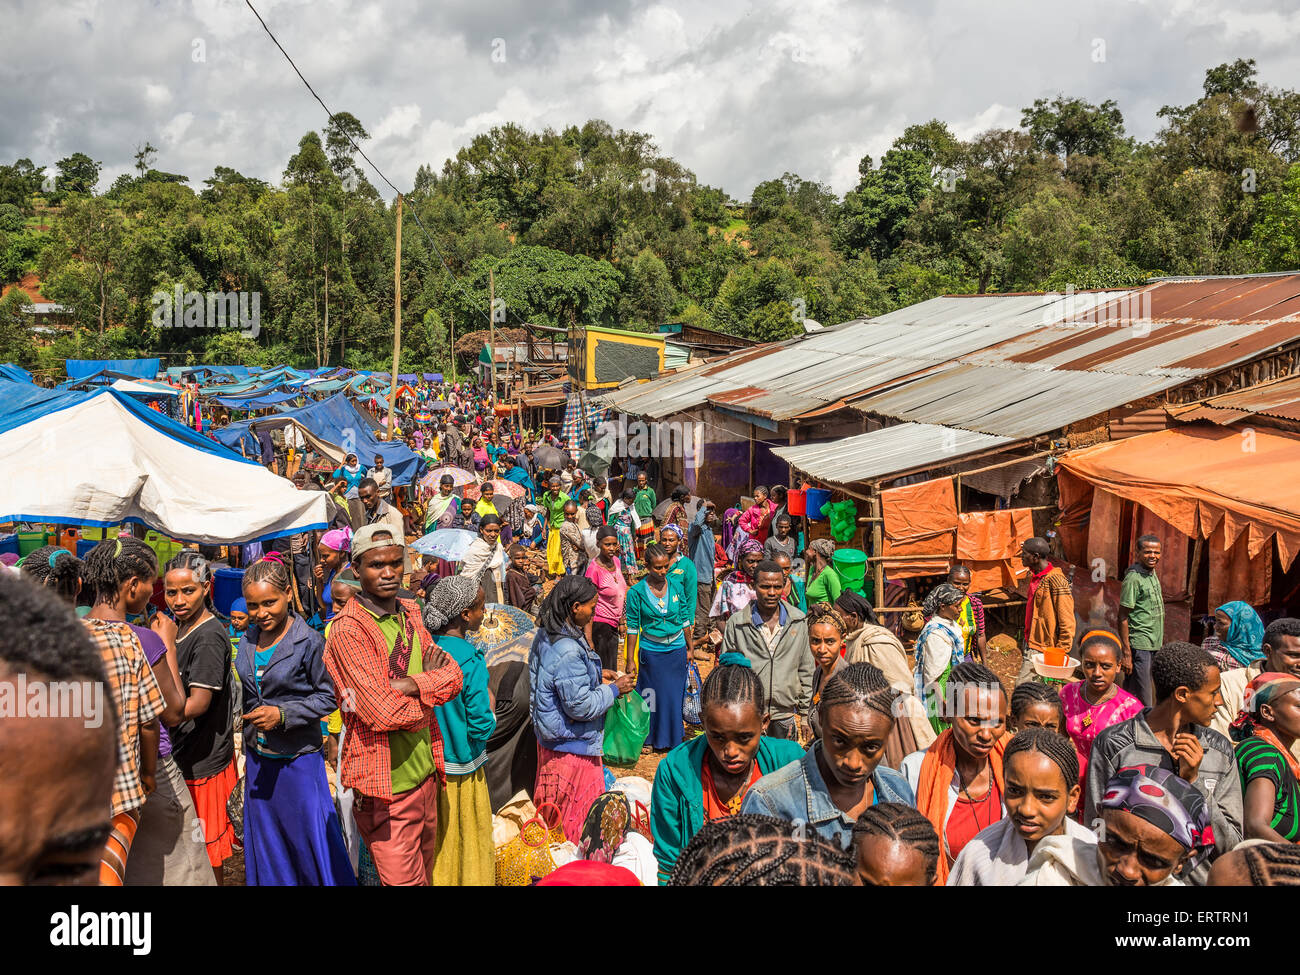 Beliebtesten und überfüllten afrikanischen Markt in Jimma, Äthiopien mit viele Menschen kaufen und verkaufen. Stockfoto